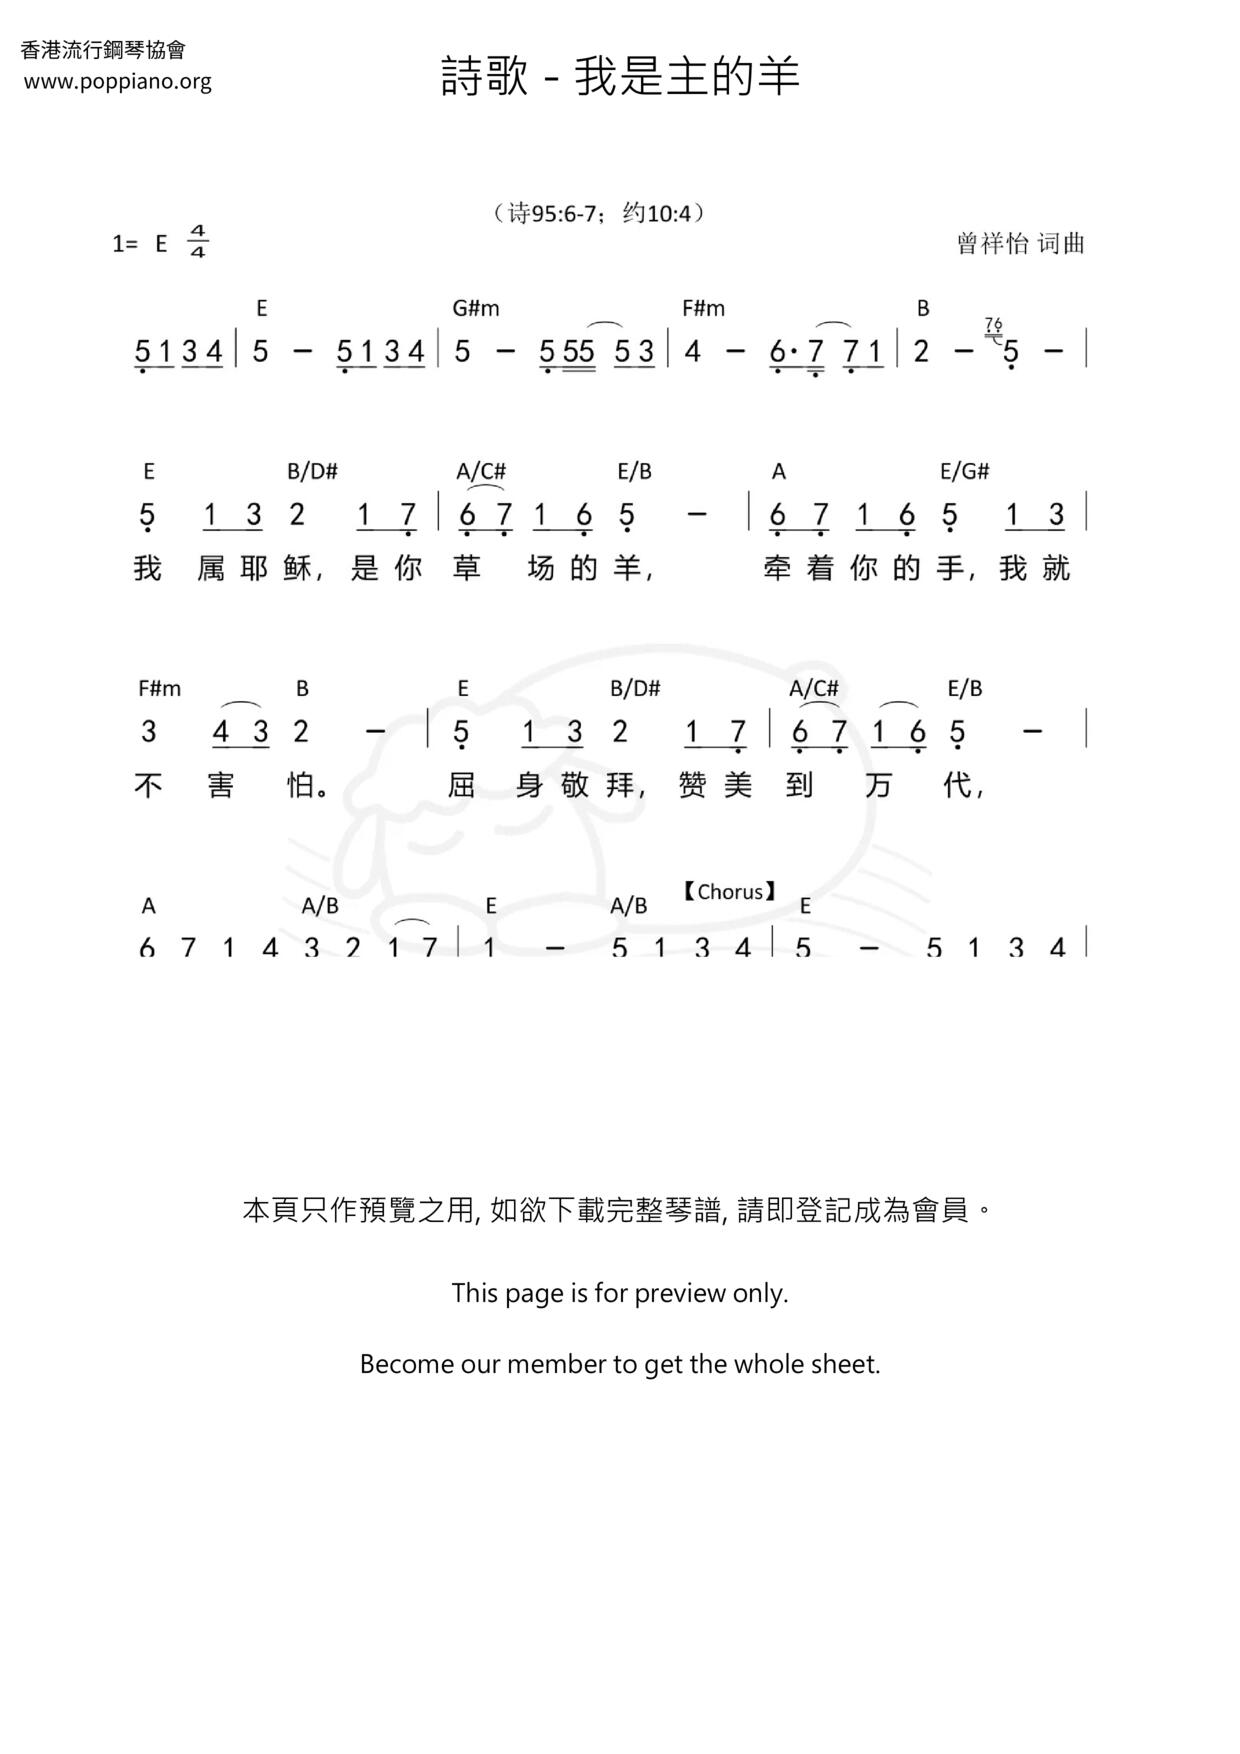 ★ 王杰-我是真的爱上你 琴谱/五线谱pdf-香港流行钢琴协会琴谱下载 ★